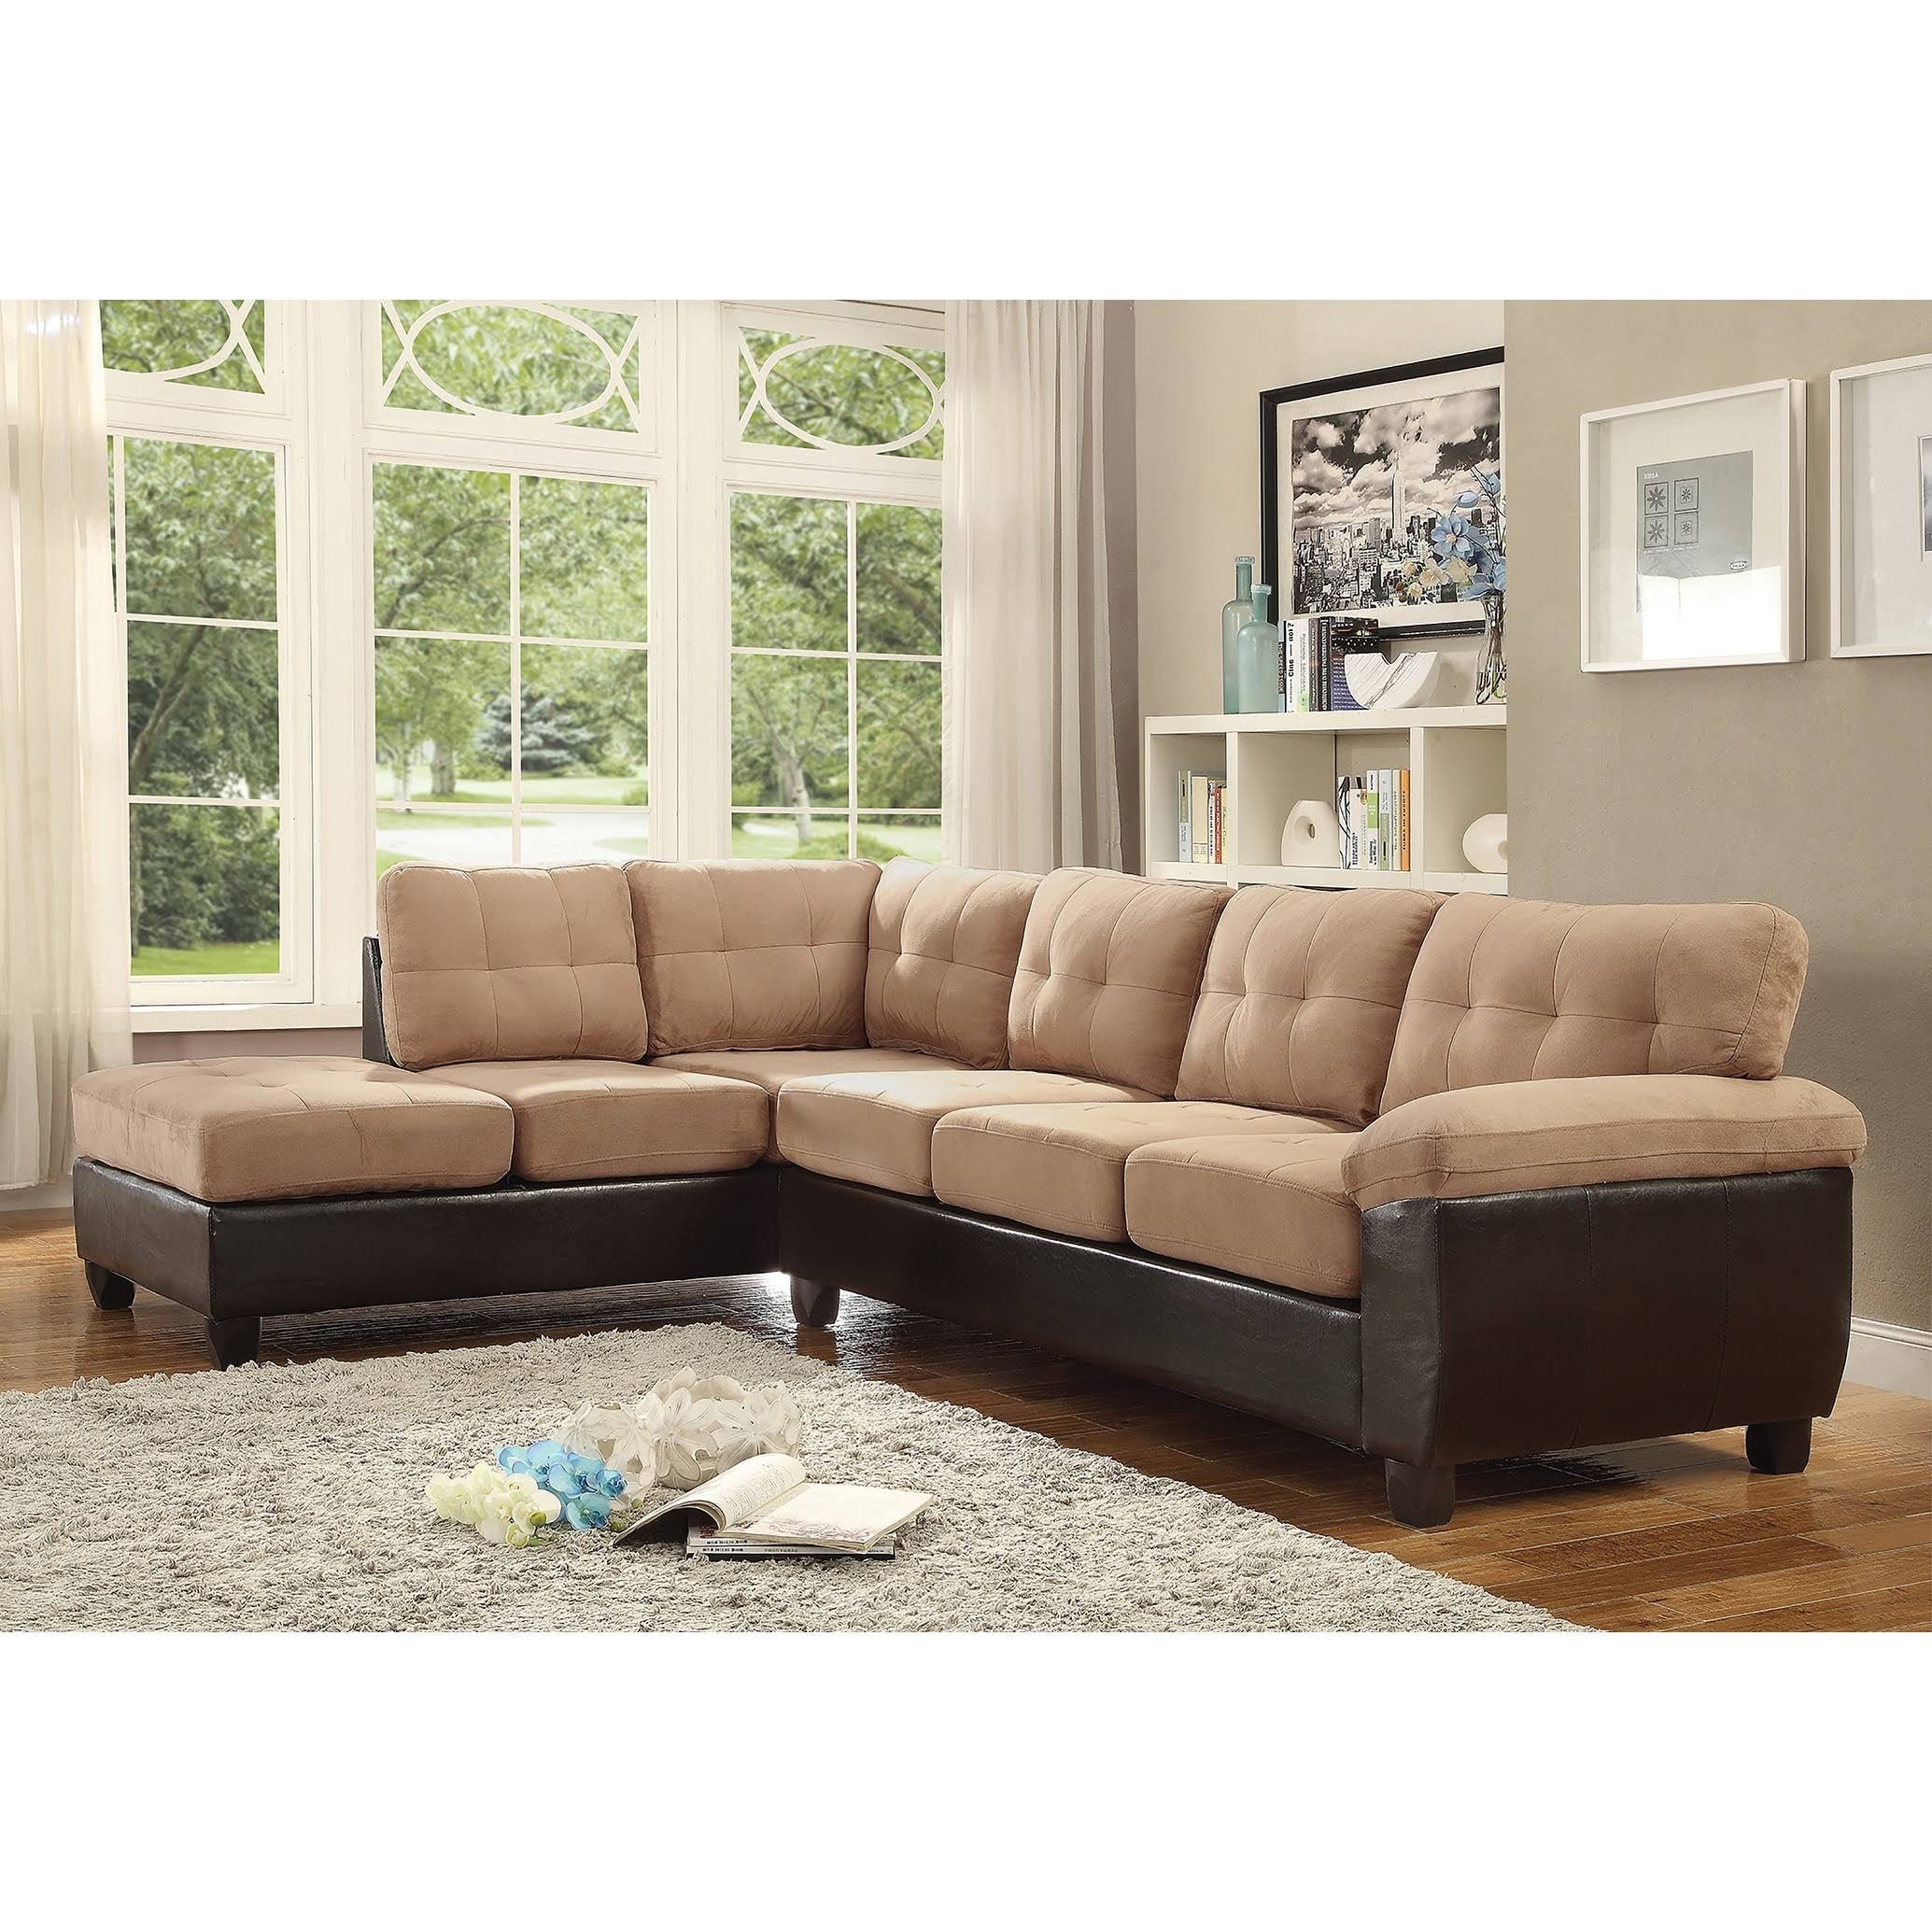 Comfortable Microfiber Sectional Sofa | Image